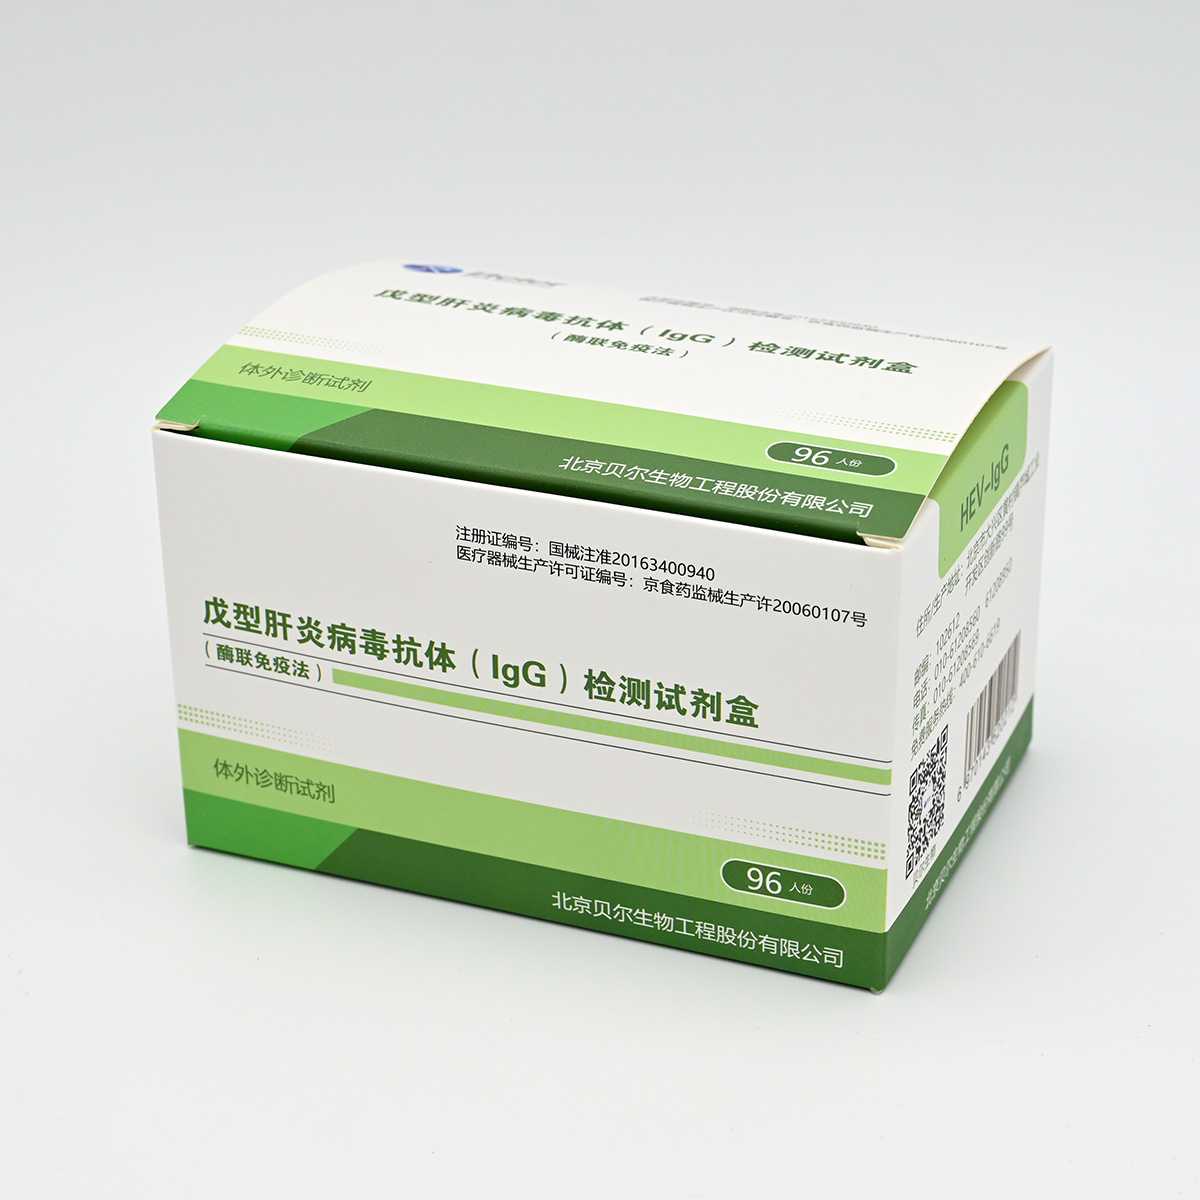 【贝尔】戊肝抗体IgG检测试剂盒(HEV-IgG)(酶联免疫法)